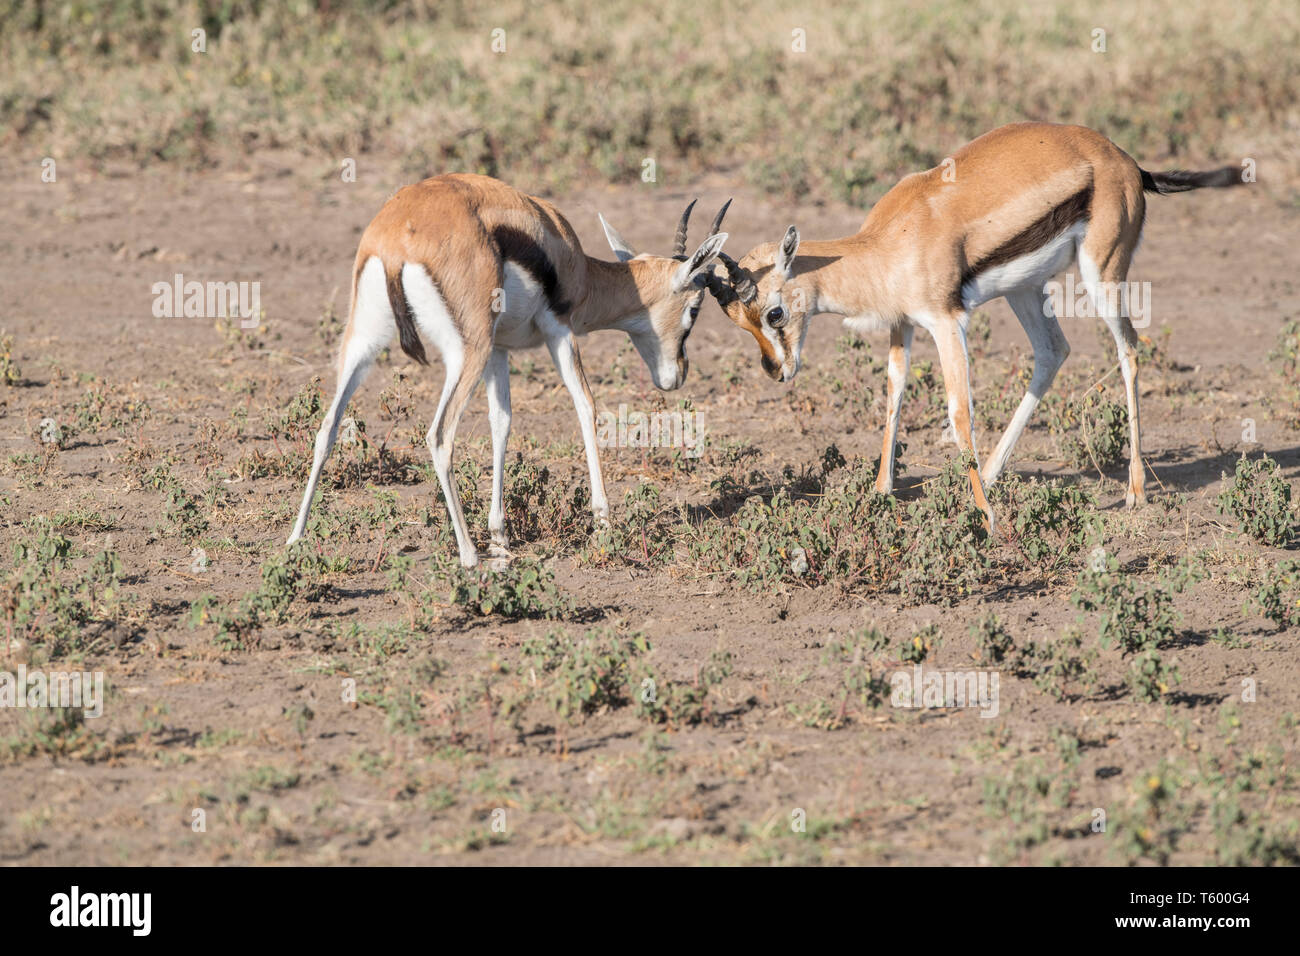 Thomsons gazelles sparring, Tanzania Stock Photo